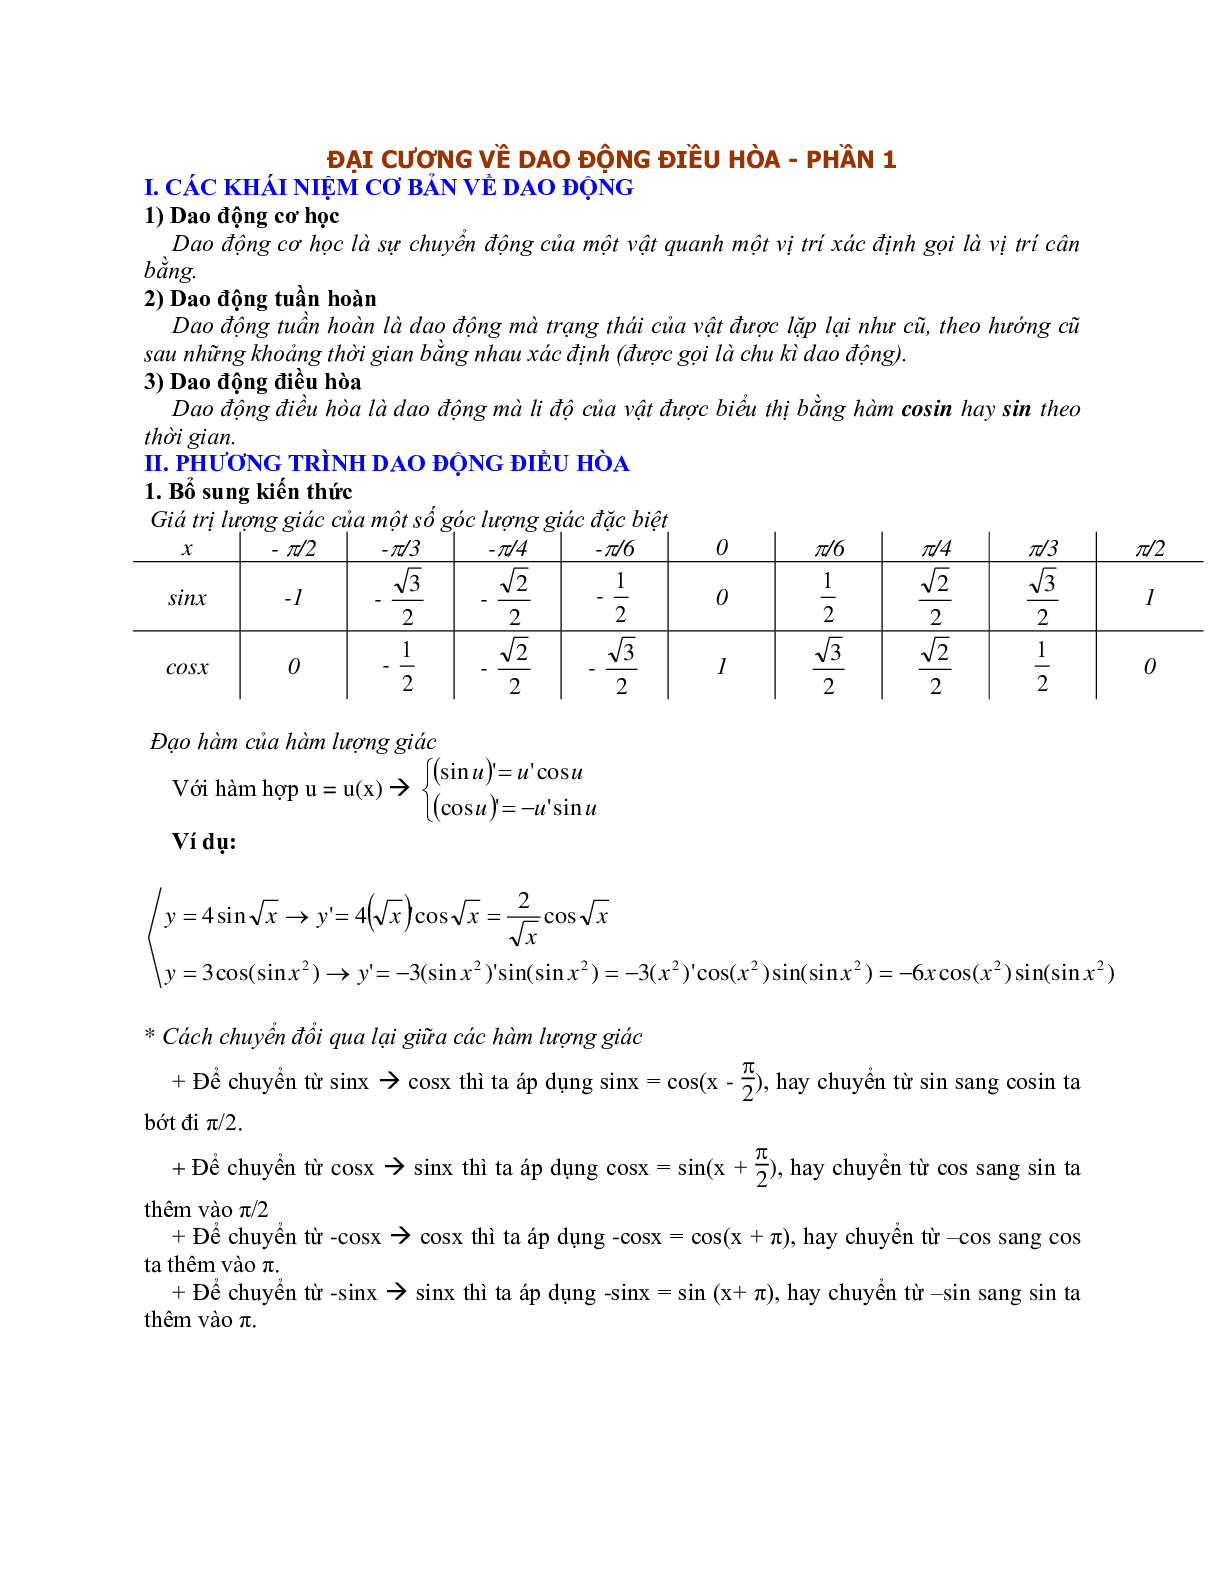 Chuyên đề Đại cương về dao động điều hòa môn Vật Lý lớp 12 (trang 1)